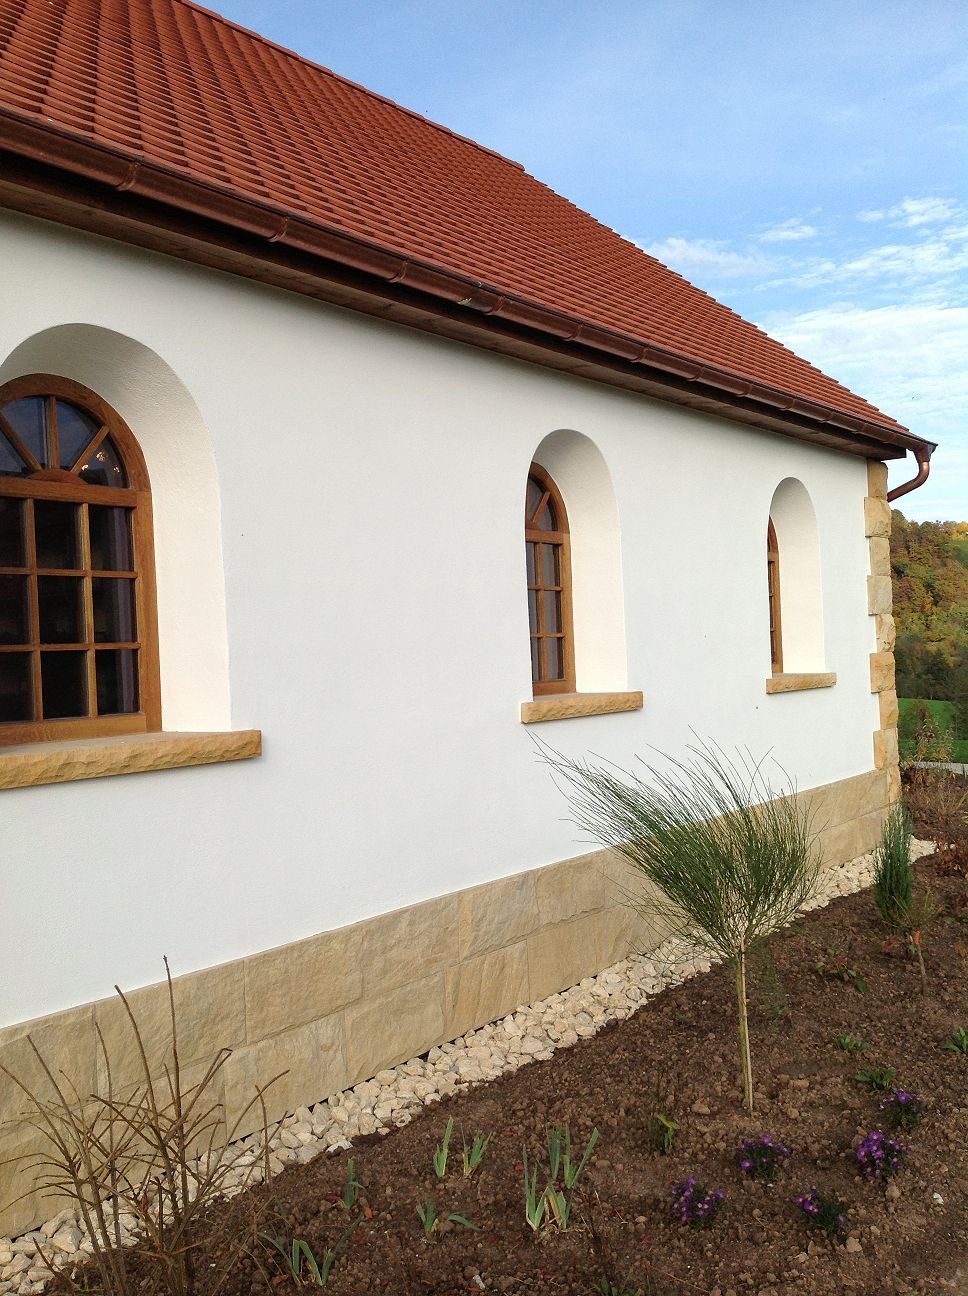  - Projekte - Wir zeigen, was wir können. :: Goller - Schreinerei und Fensterbau in Allmersbach am Weinberg